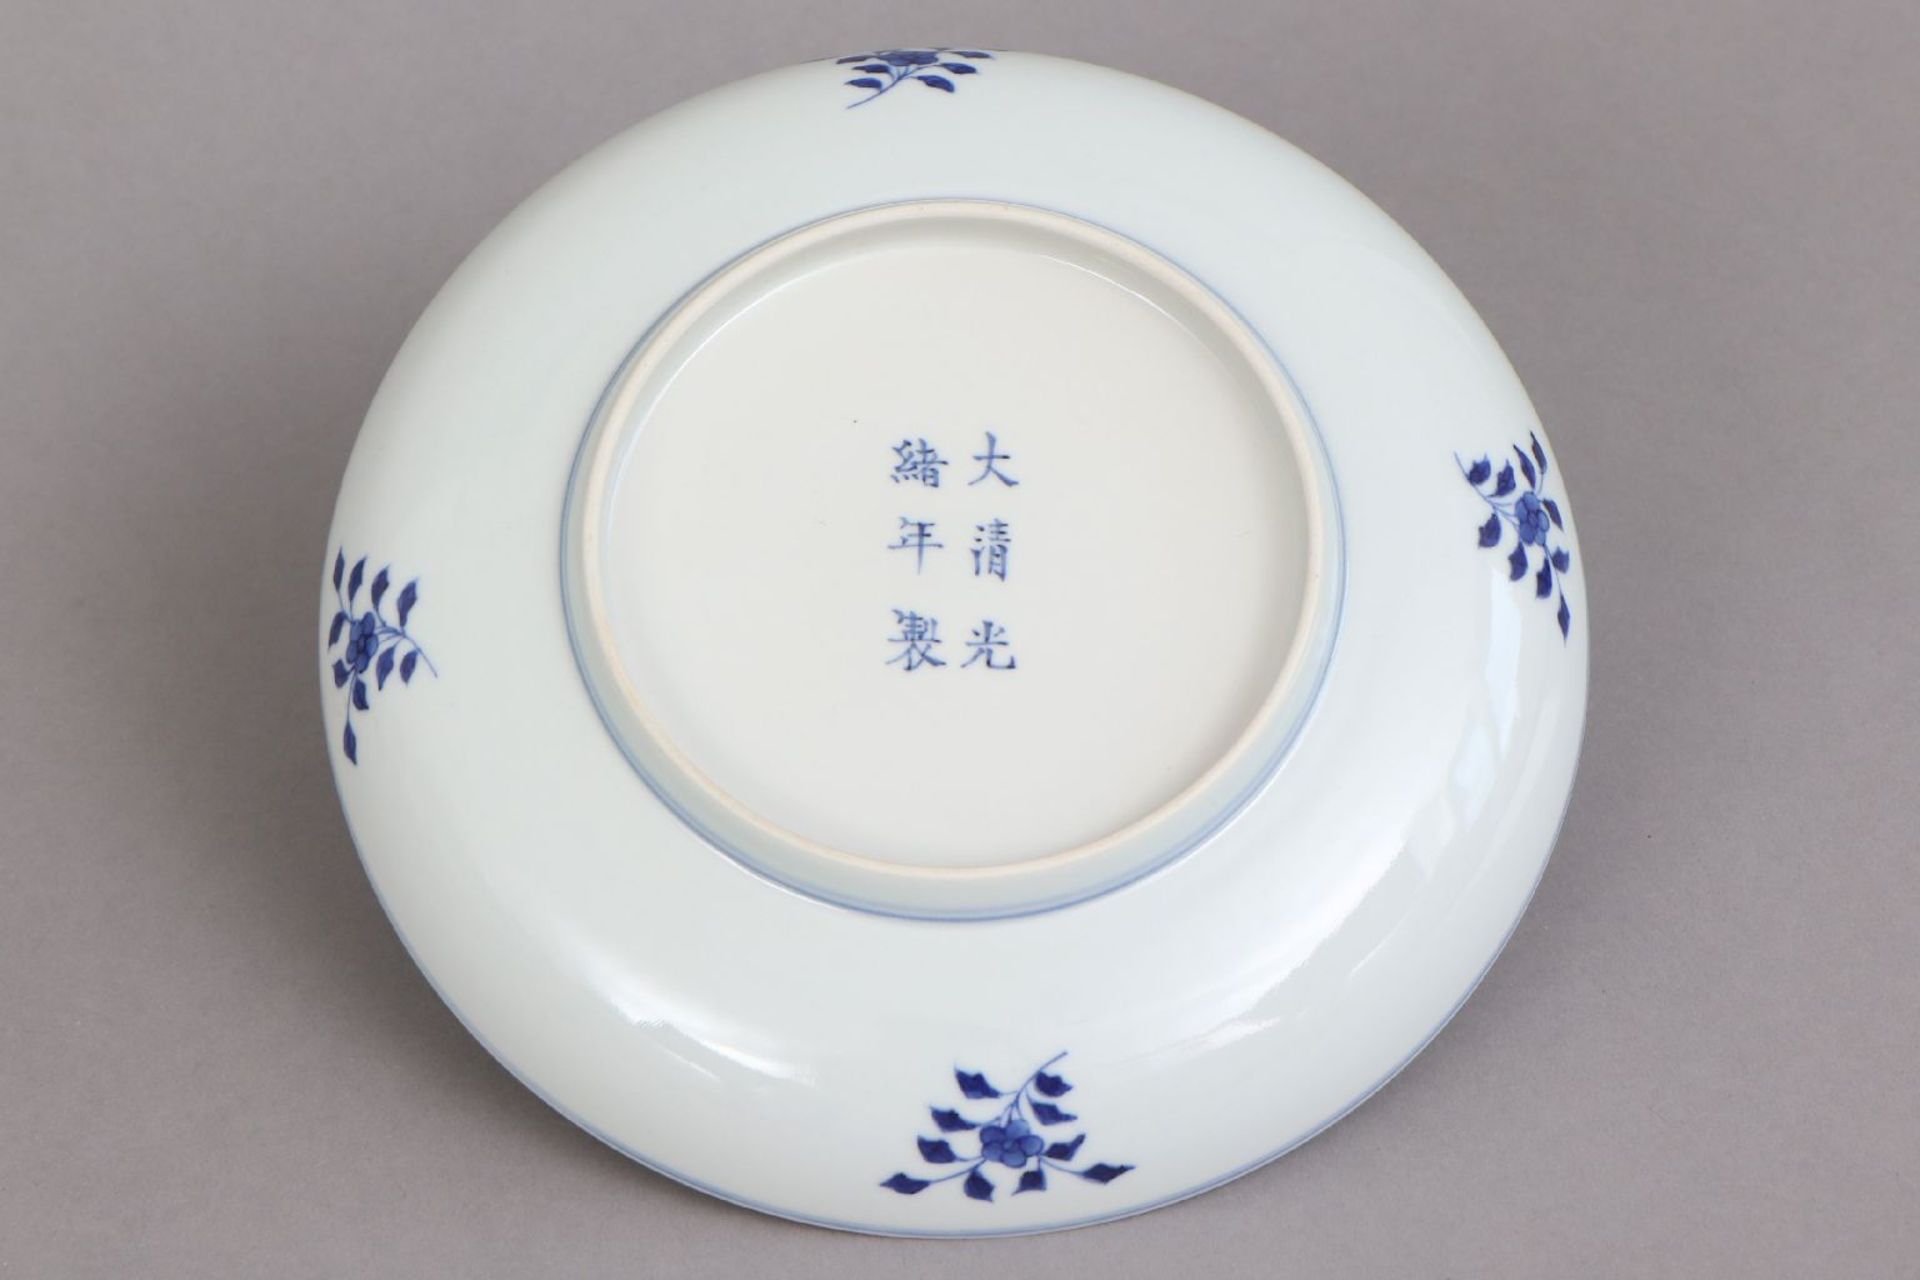 Chinesischer Teller mit Blaumalerei - Image 3 of 5